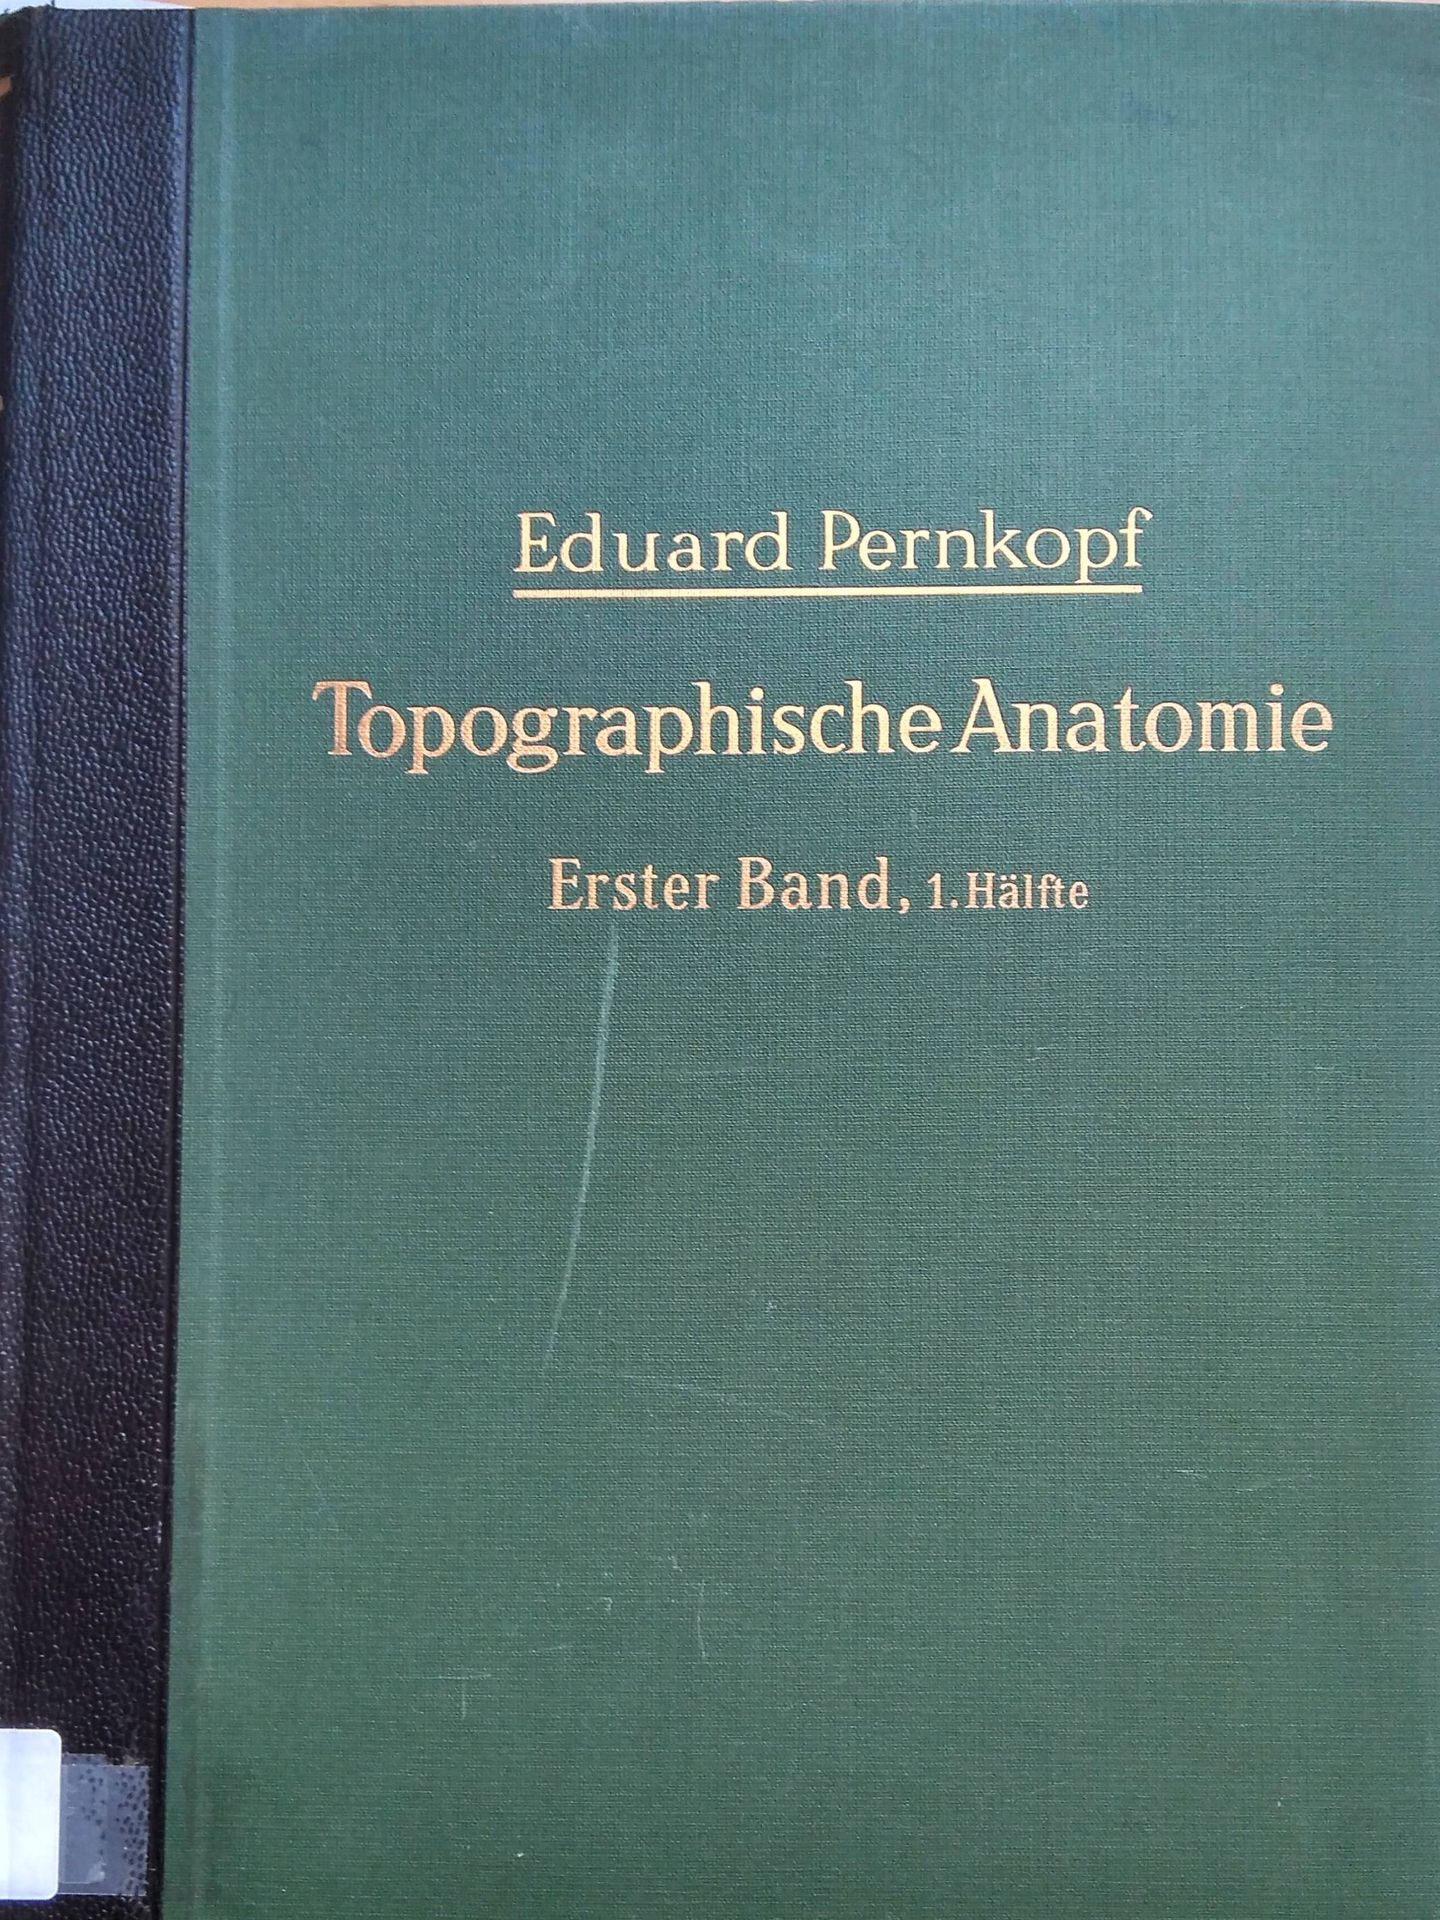 Cubierta de una edición de 1945 del atlas de Pernkopf. (Ana Ramírez)